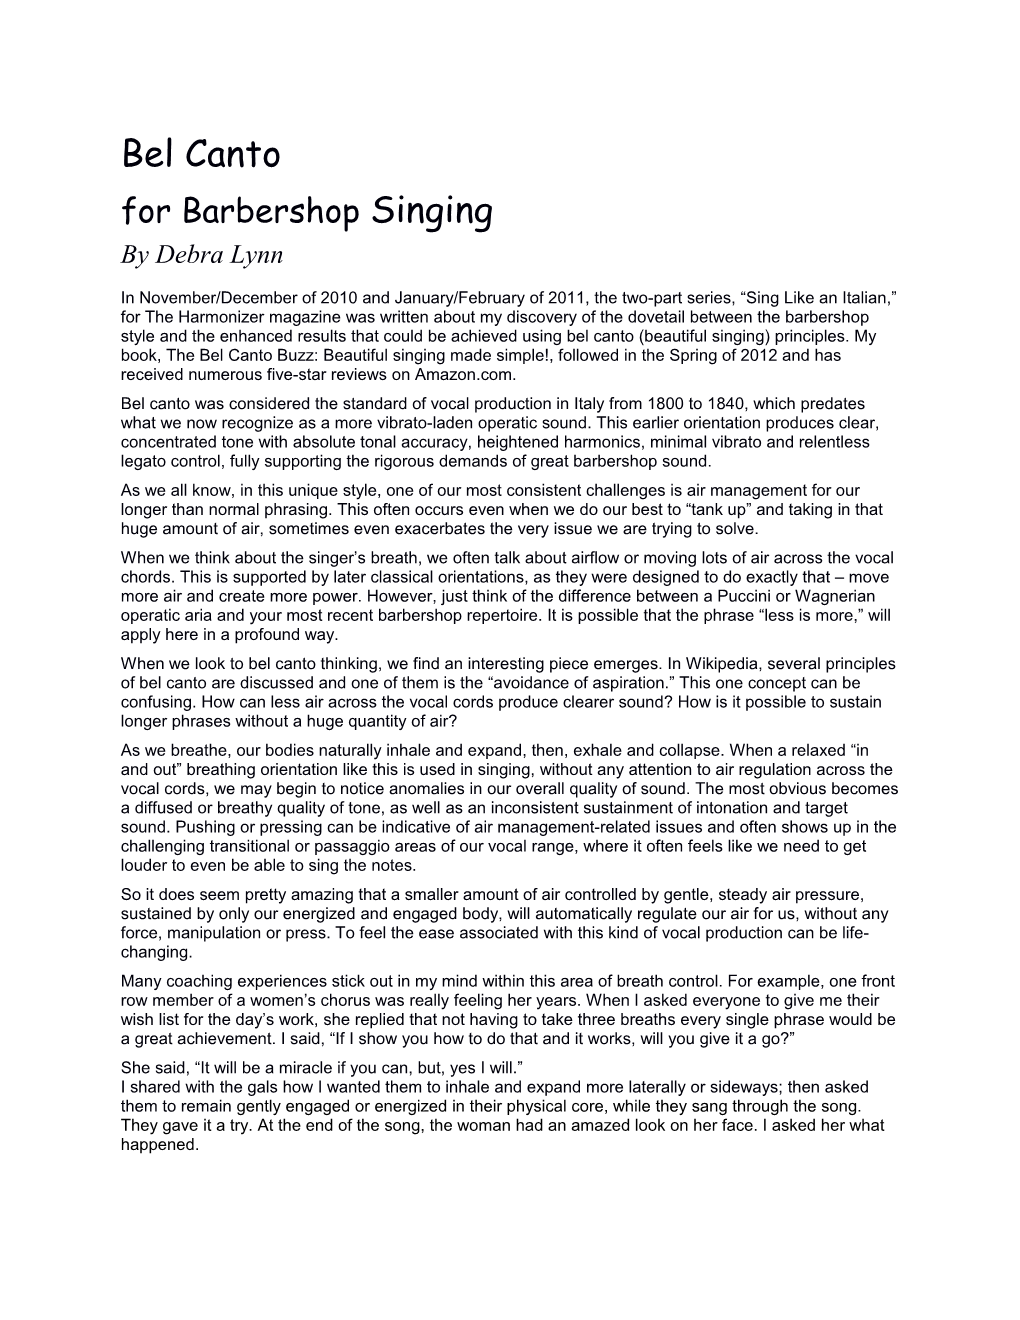 Forbarbershop Singing